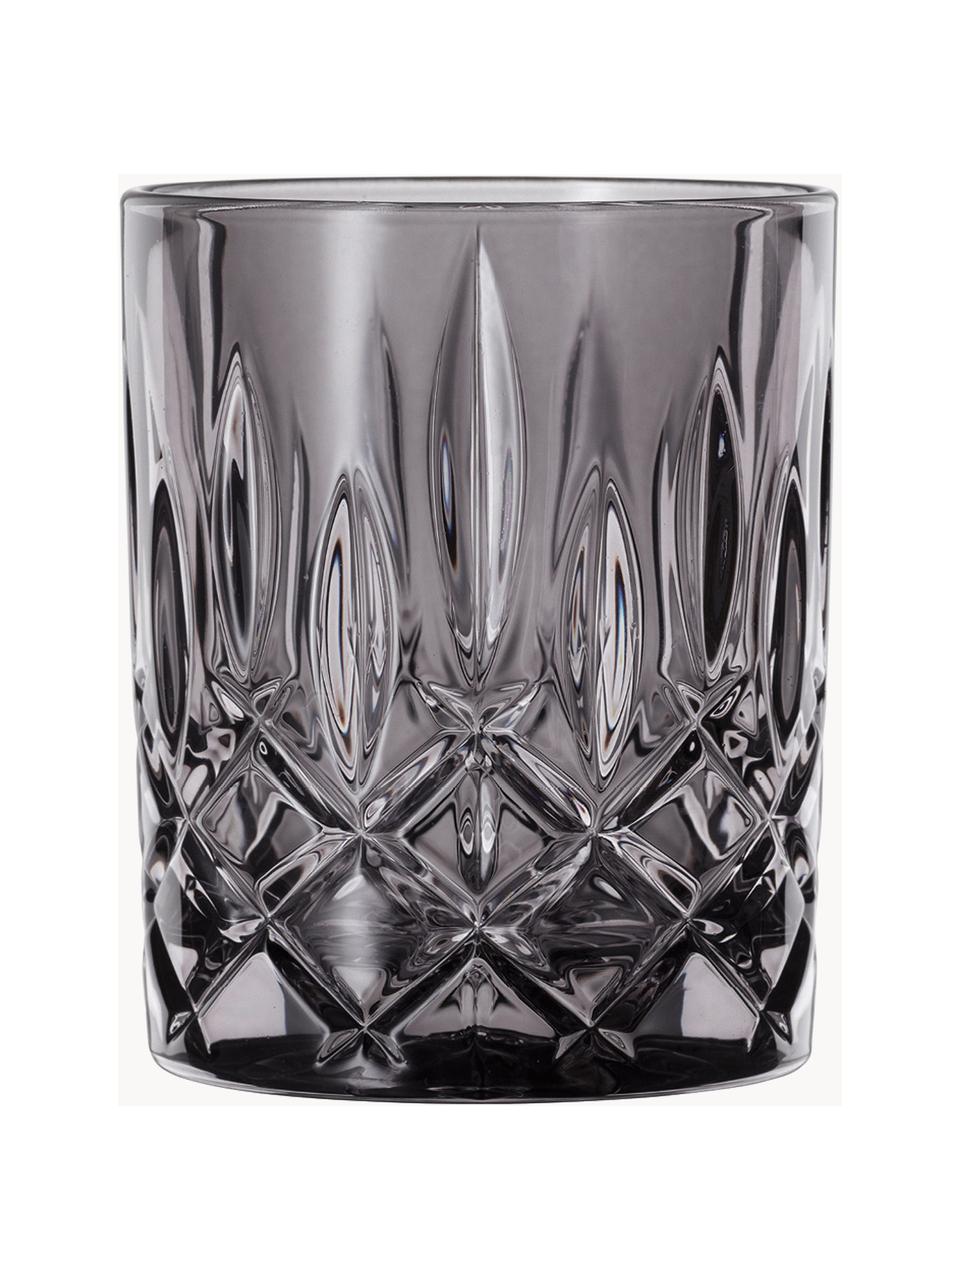 Kristall-Whiskygläser Noblesse, 2 Stück, Kristallglas, Dunkelgrau, Ø 8 x H 10 cm, 300 ml